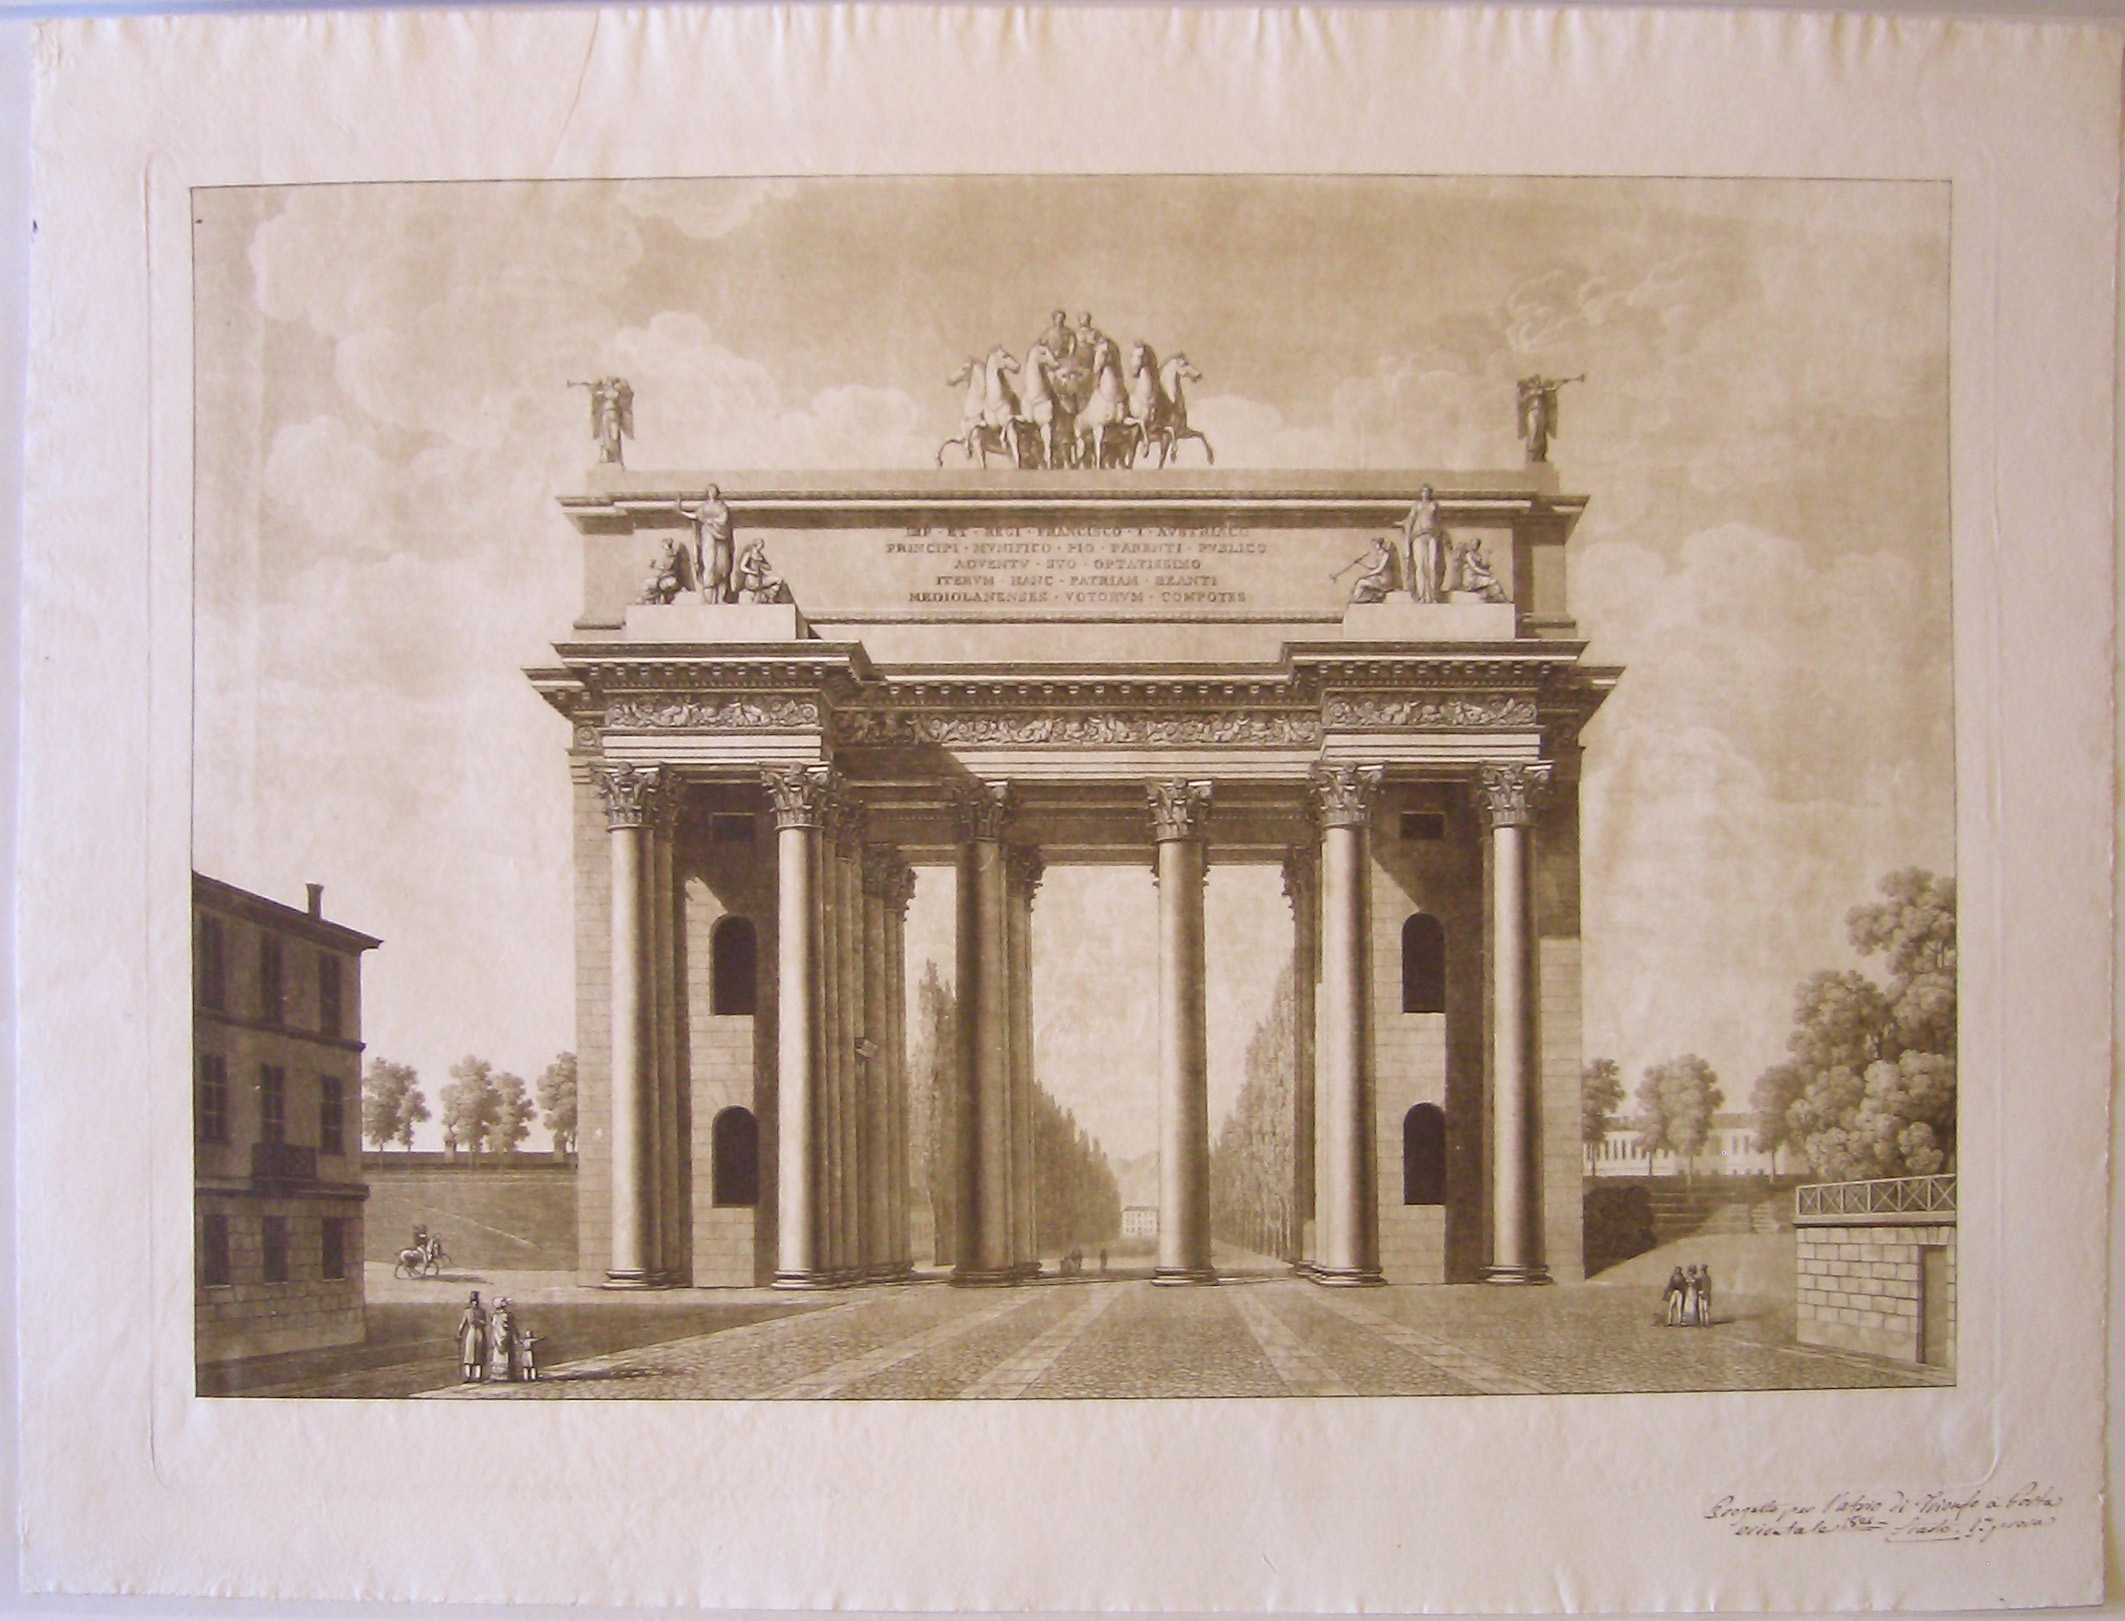 Progetto per l'atrio di trionfo a porta Orientale 1825, veduta prospettica dell'arco provvisorio a porta Orientale a Milano (prima variante) (stampa) di Cagnola Luigi (sec. XIX)